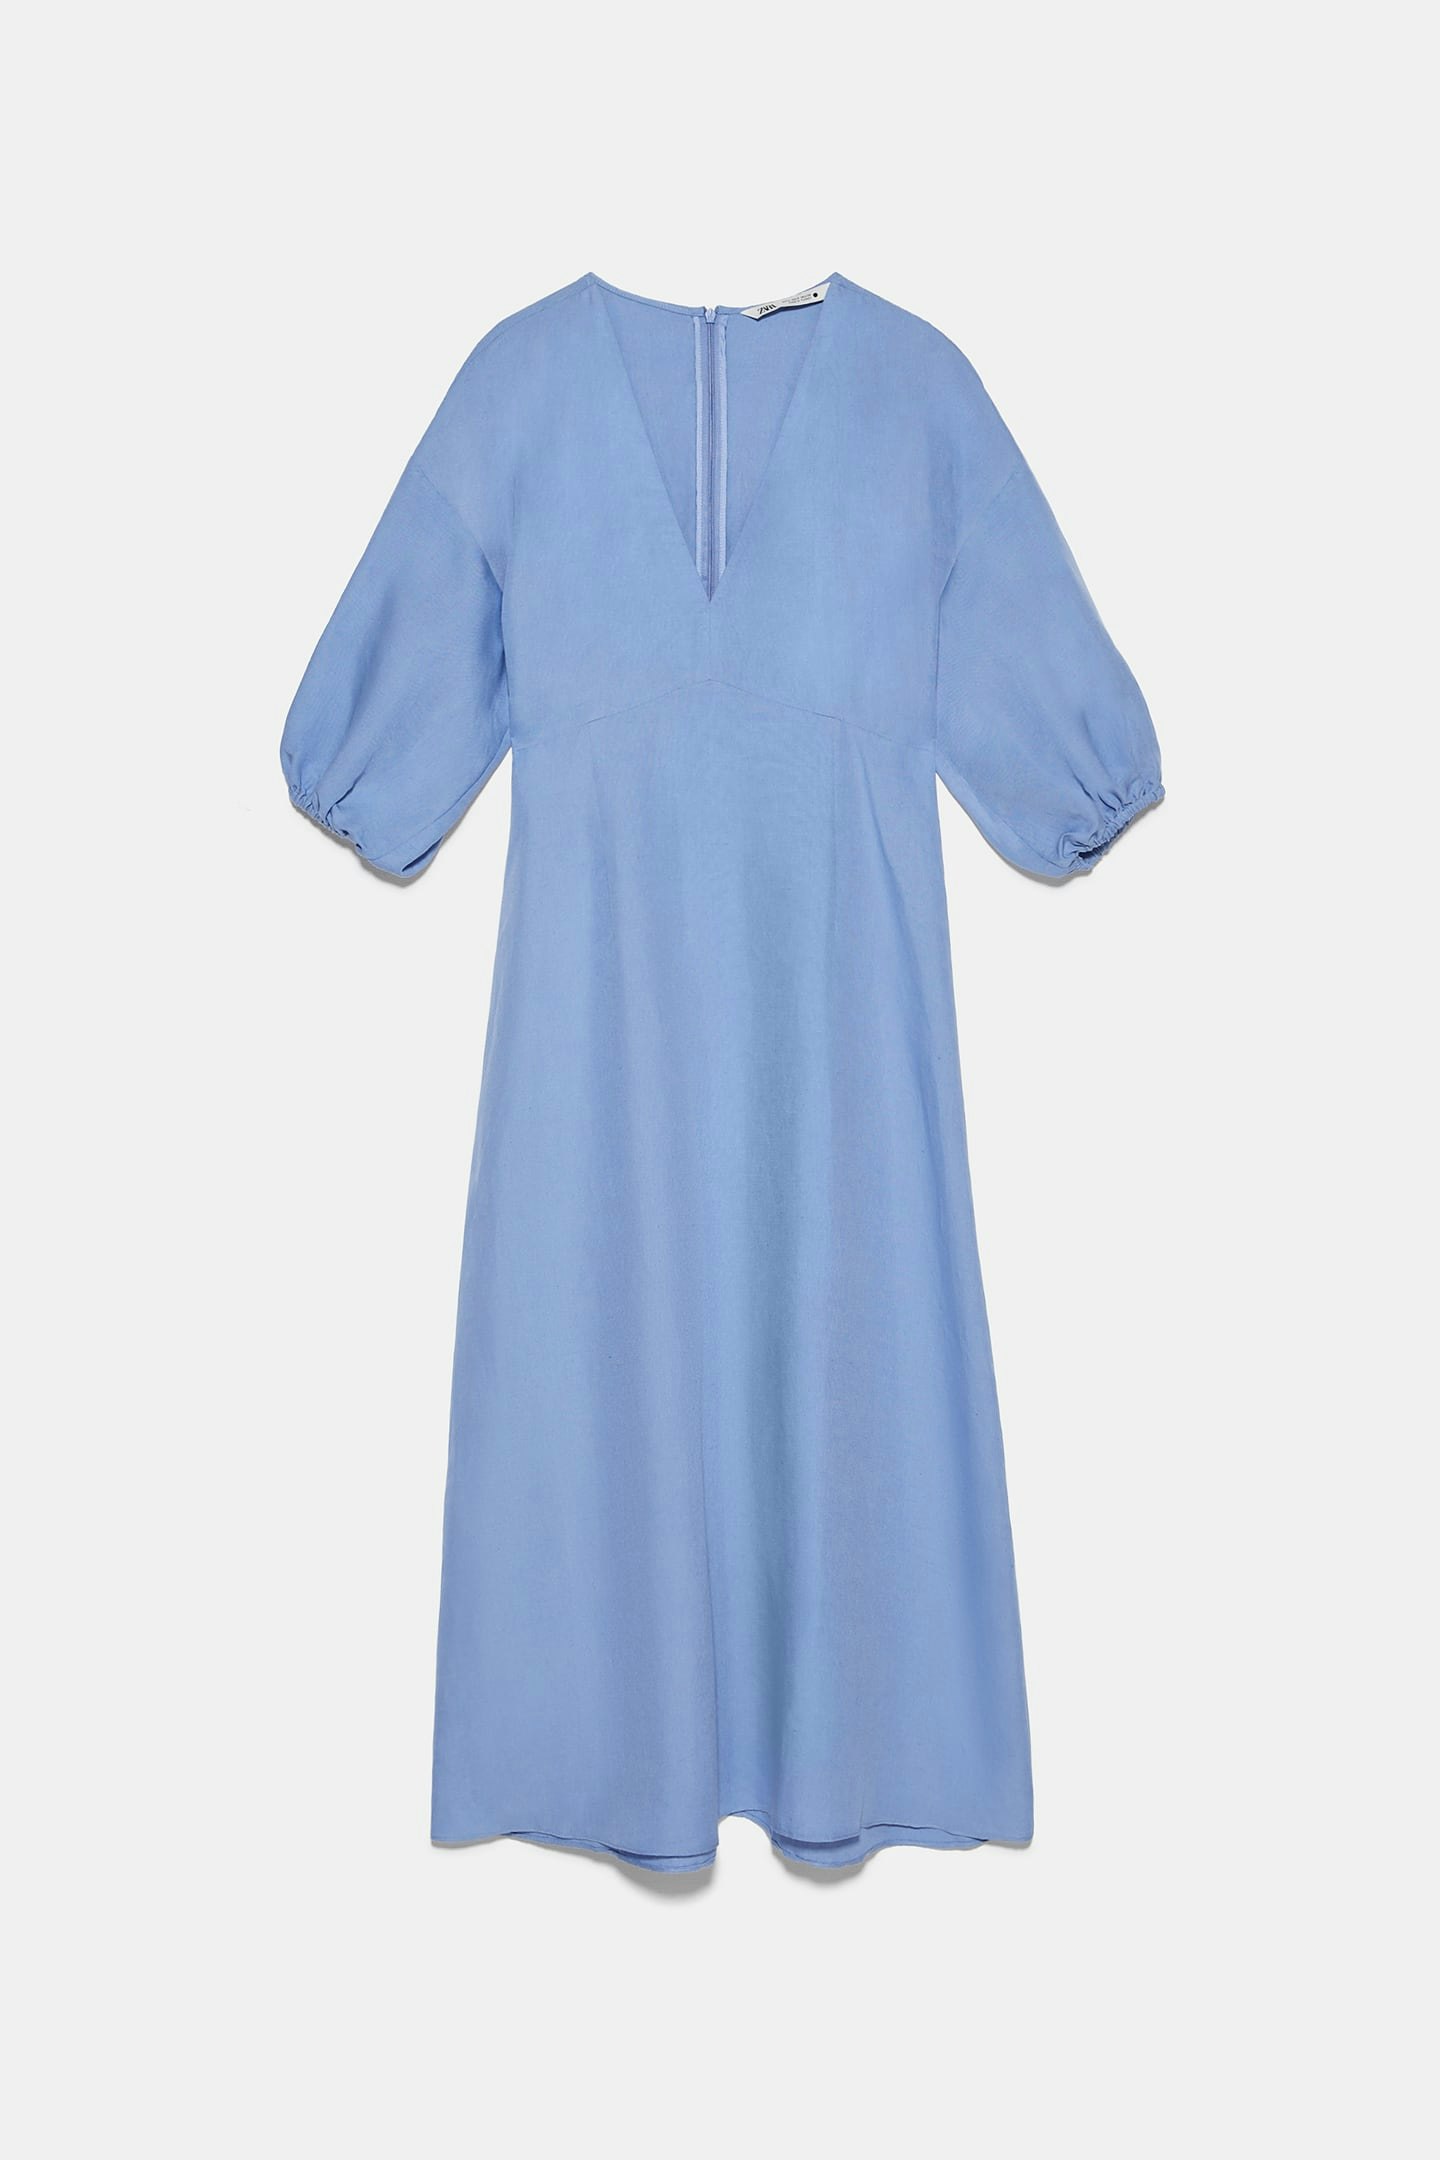 Zara, Voluminous Rustic Dress, £49.99